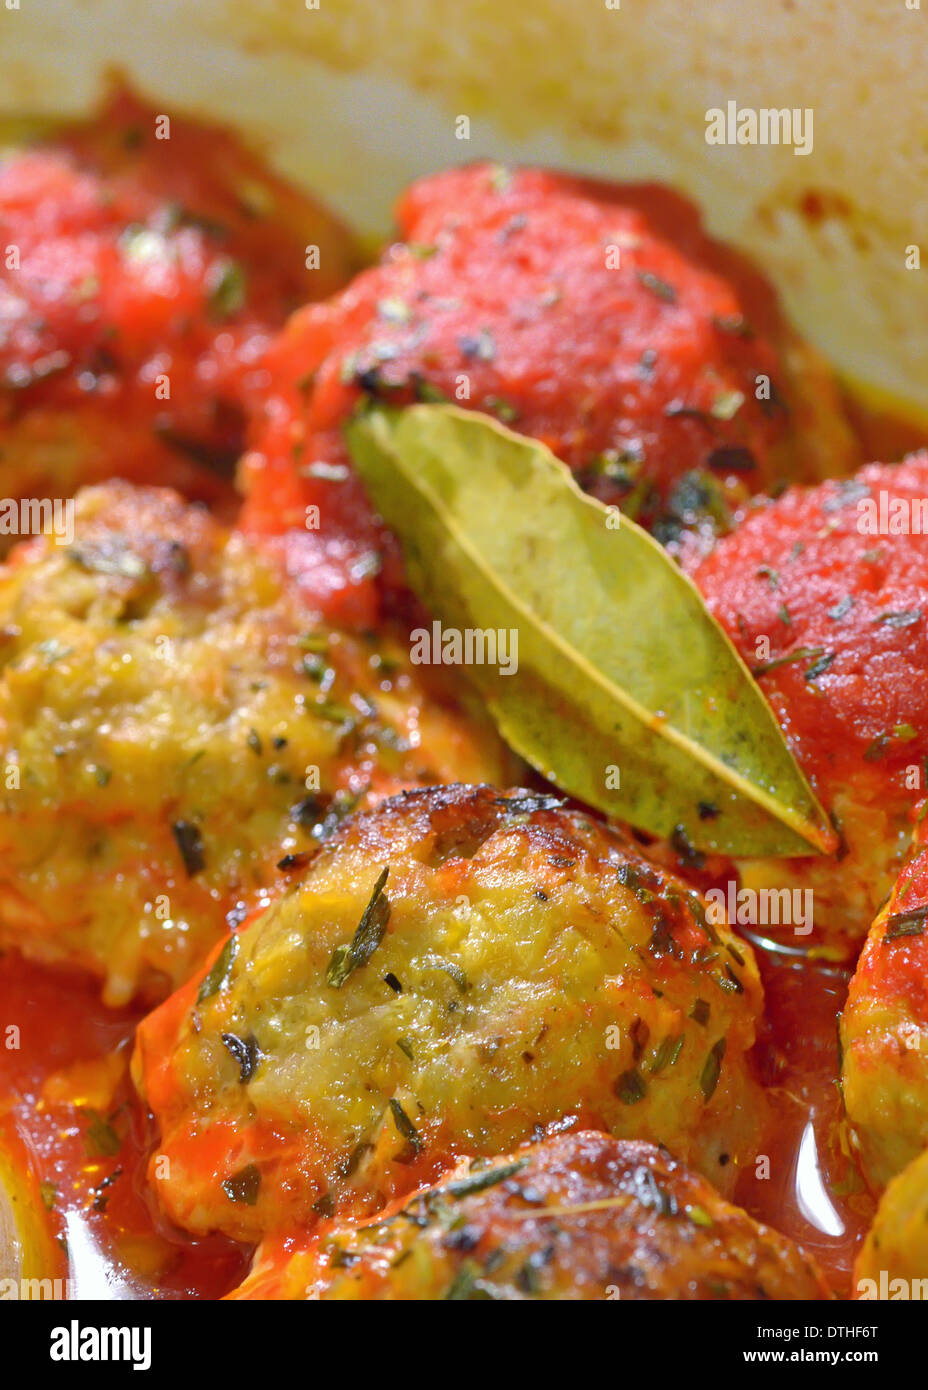 Boulettes de viande avec sauce tomate et feuilles de bébé, close-up Banque D'Images